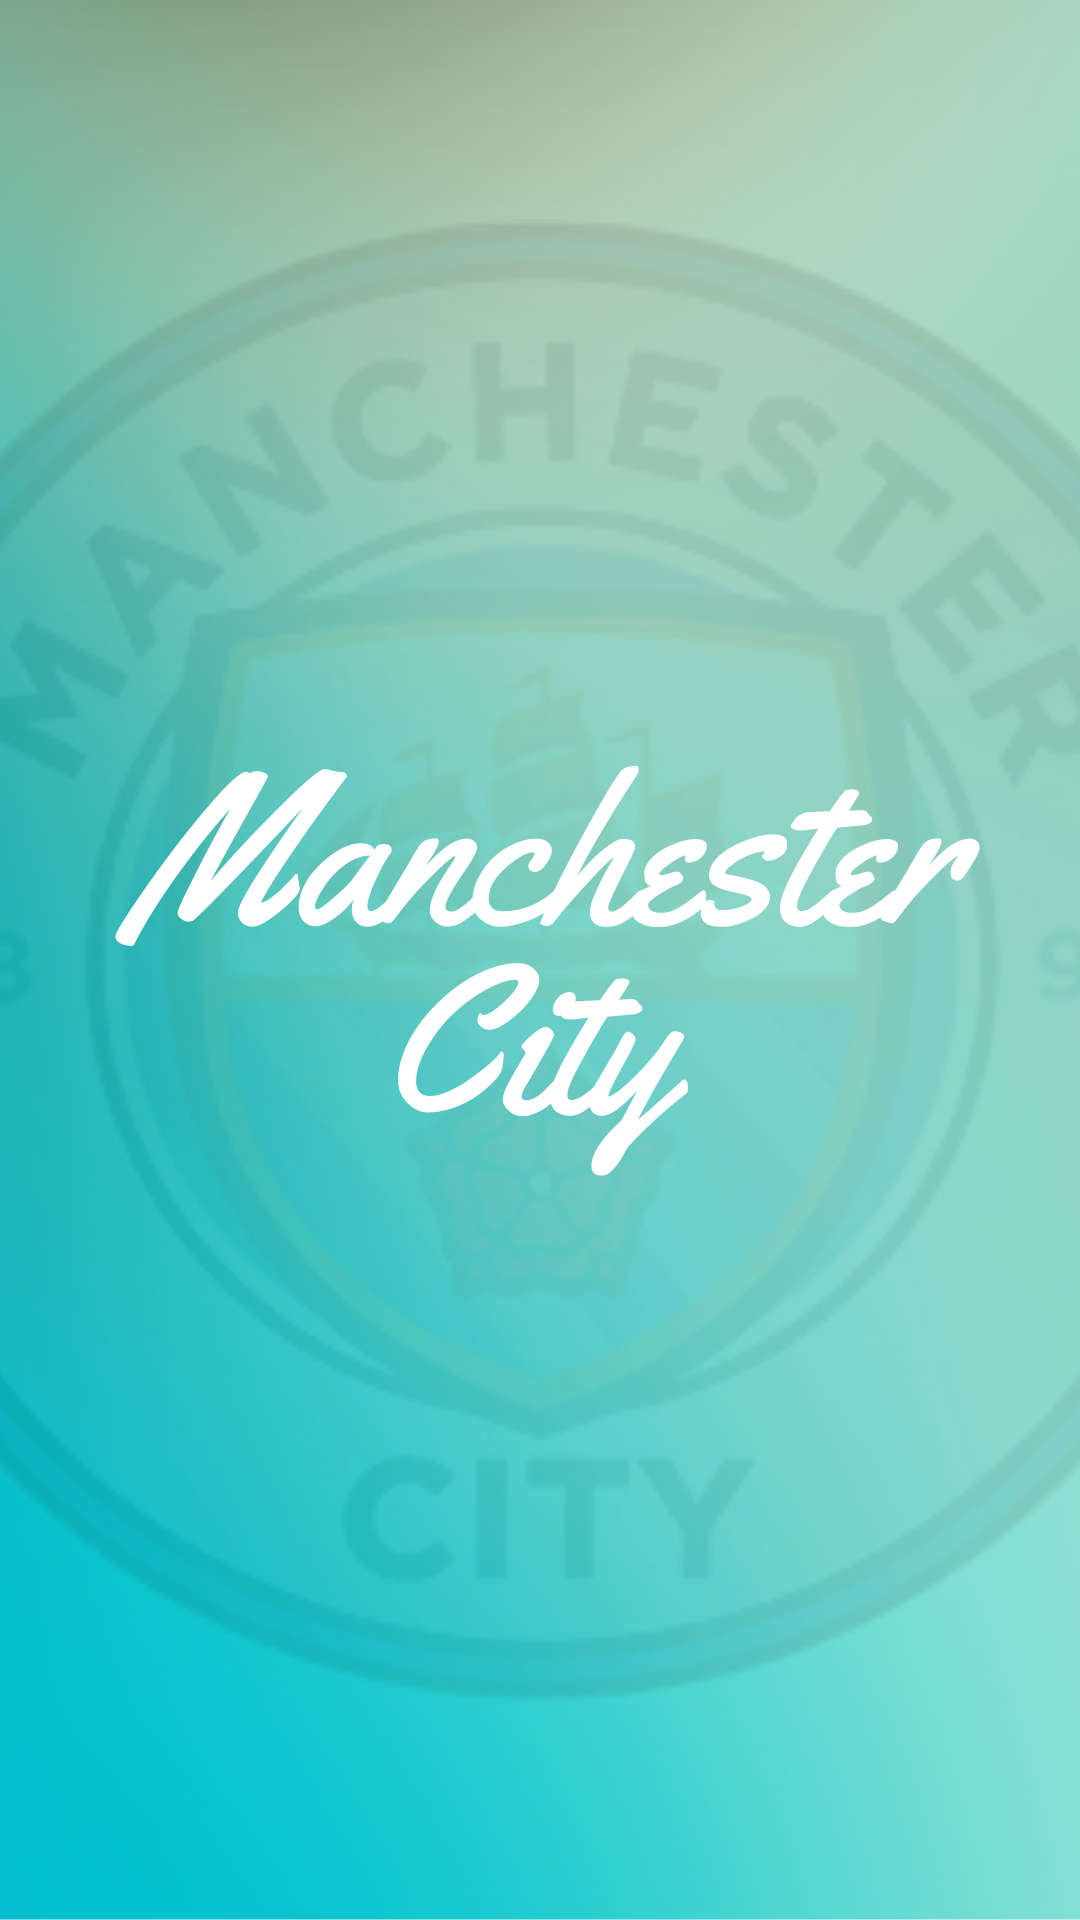 Manchester City iPhone Wallpaper. Manchester city, City iphone wallpaper, City